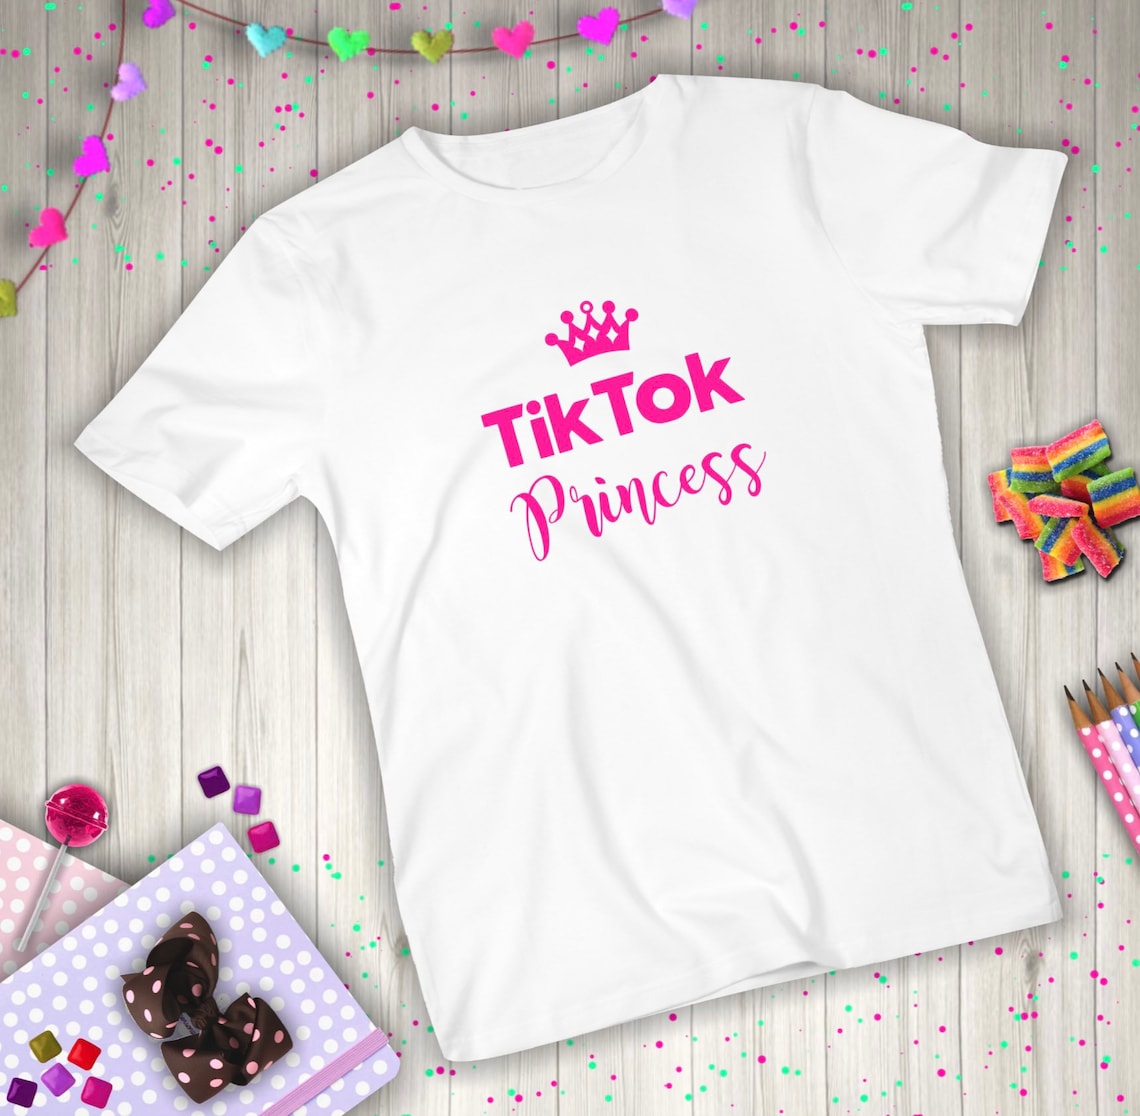 Girls Tik Tok Princess Hot Pink Fun T Shirt Kids Cute Tee - Etsy